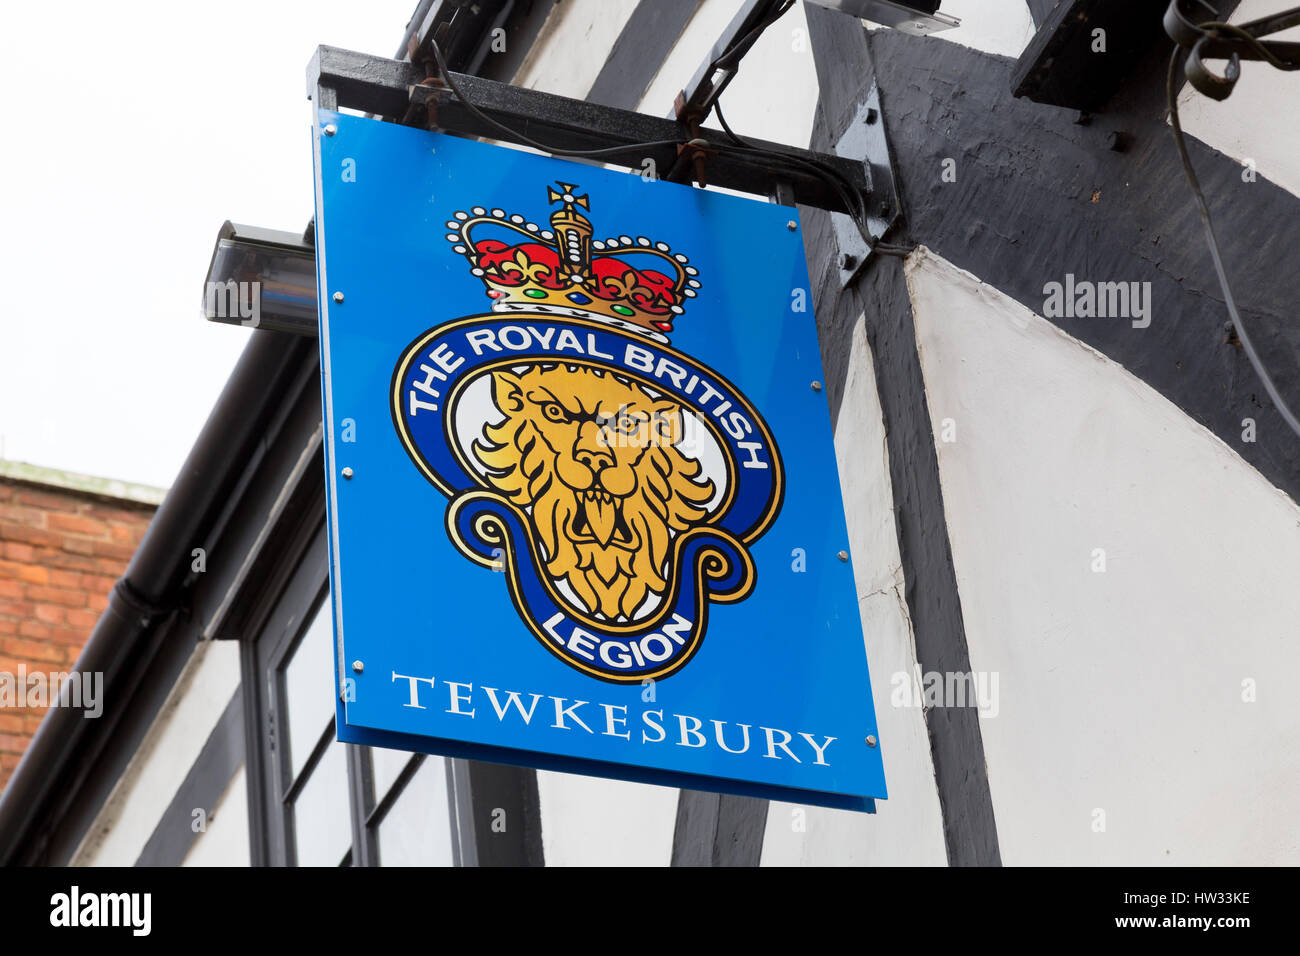 Royal British Legion sign, Tewkesbury, Worcestershire England UK Stock Photo